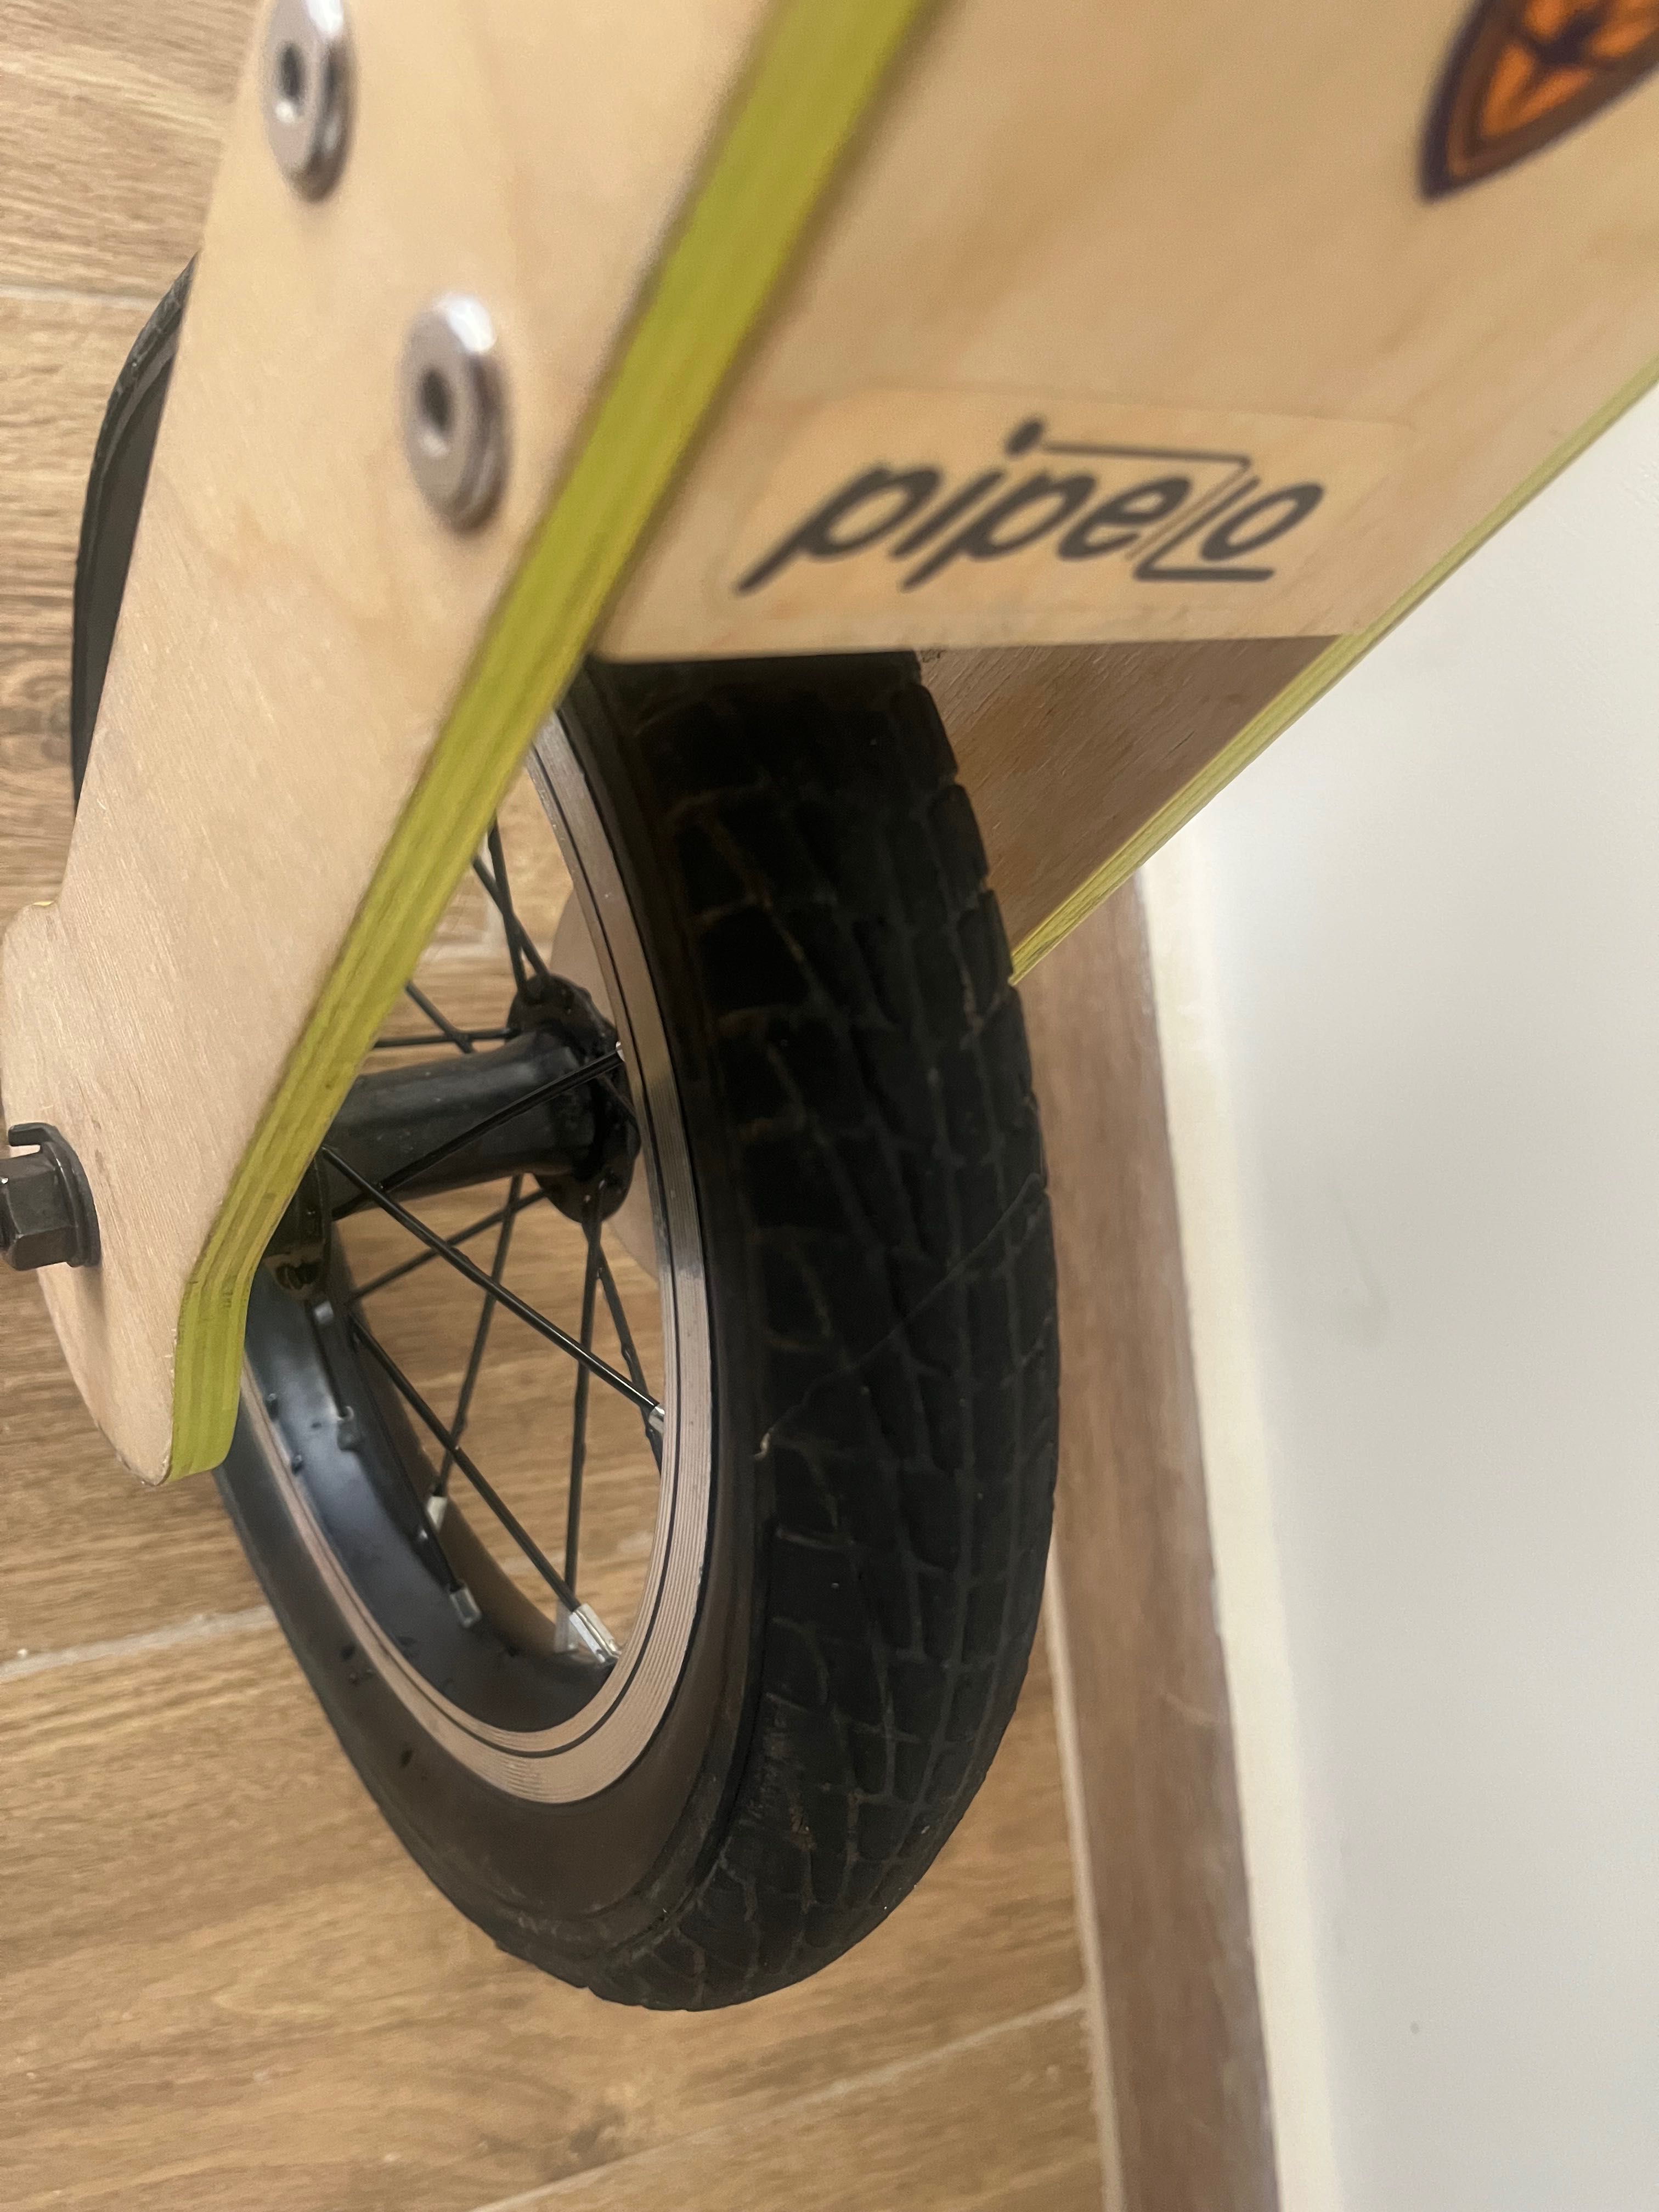 Дървено баланс колело Pipelo